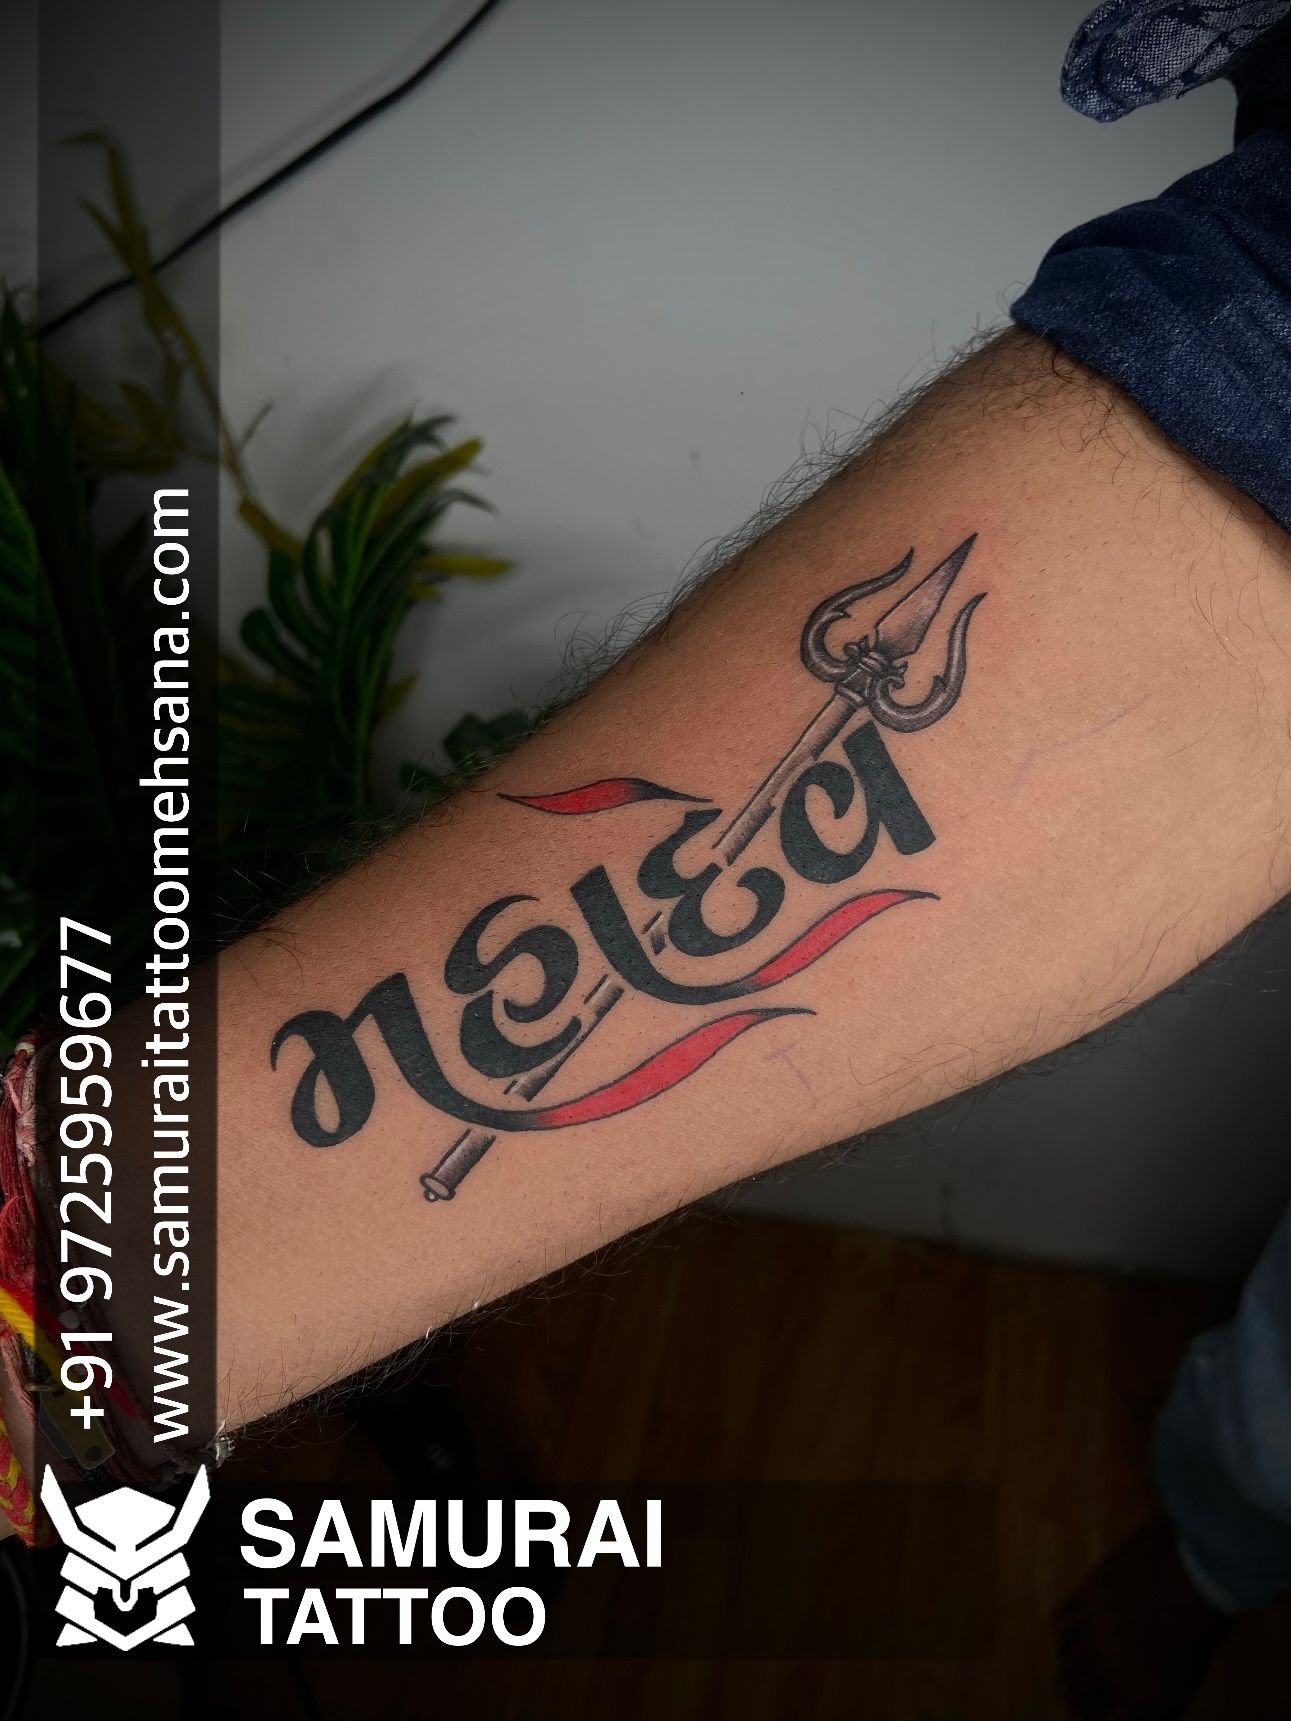 Trishul With Om Tattoo | Om tattoo, Tattoos, Trishul tattoo designs